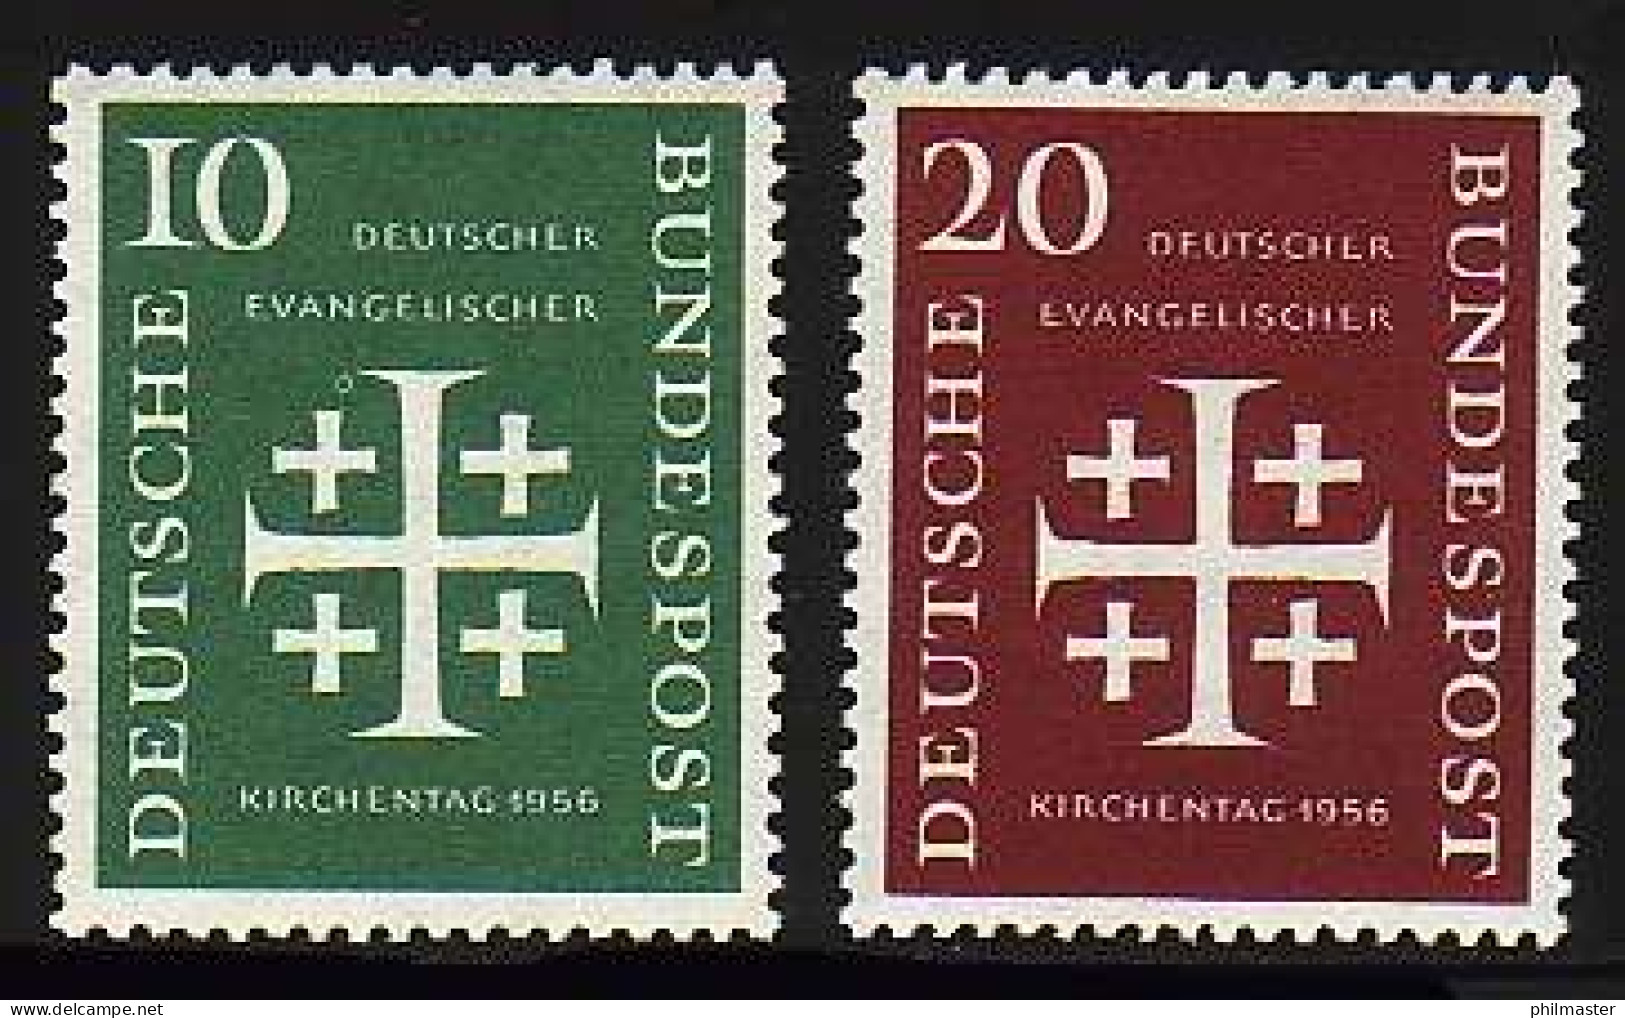 235-236 Evangelischer Kirchentag 1956 - Satz Postfrisch ** - Ungebraucht